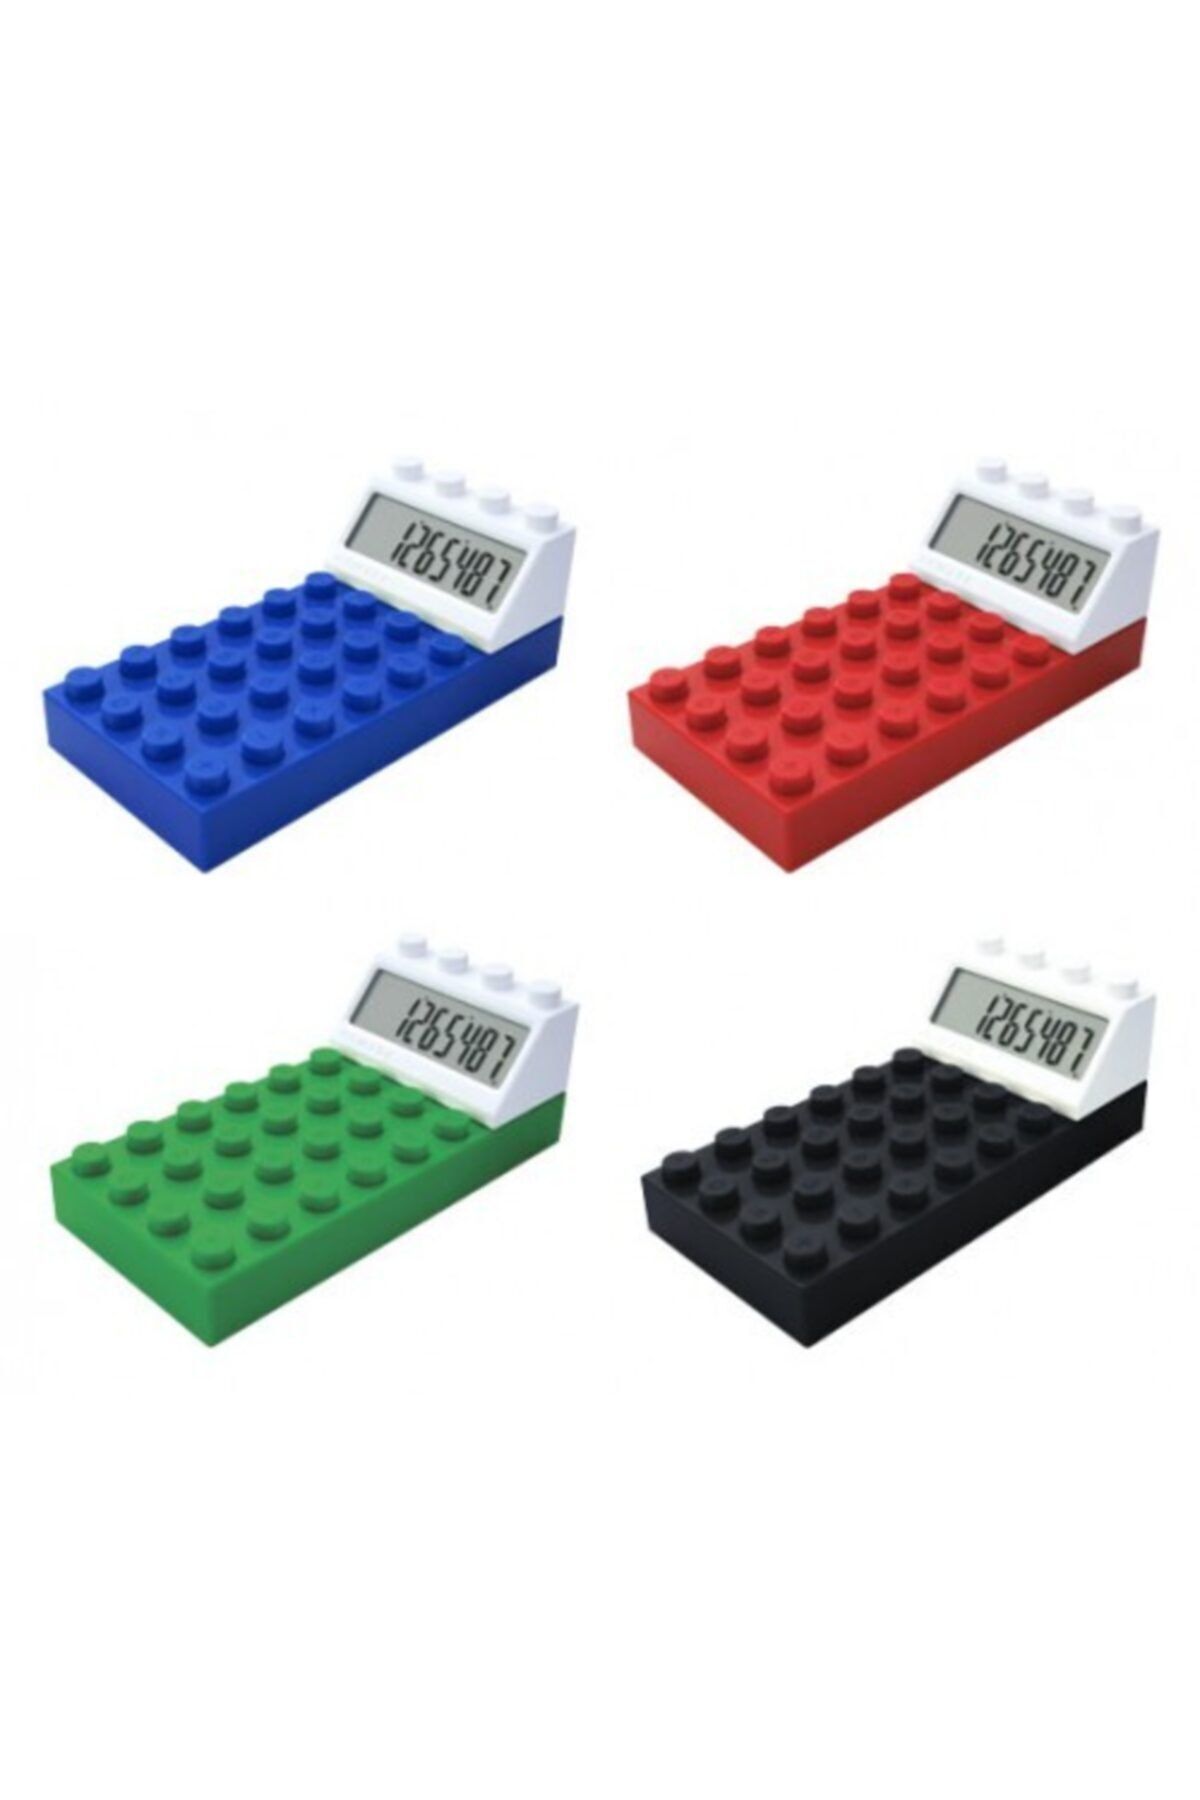 Genel Markalar "LEGO Görünümlü Hesap Makinesi: Hesaplamalarınıza Renk Katın, Eğlenceli ve Fonksiyonel Bir Cihaz